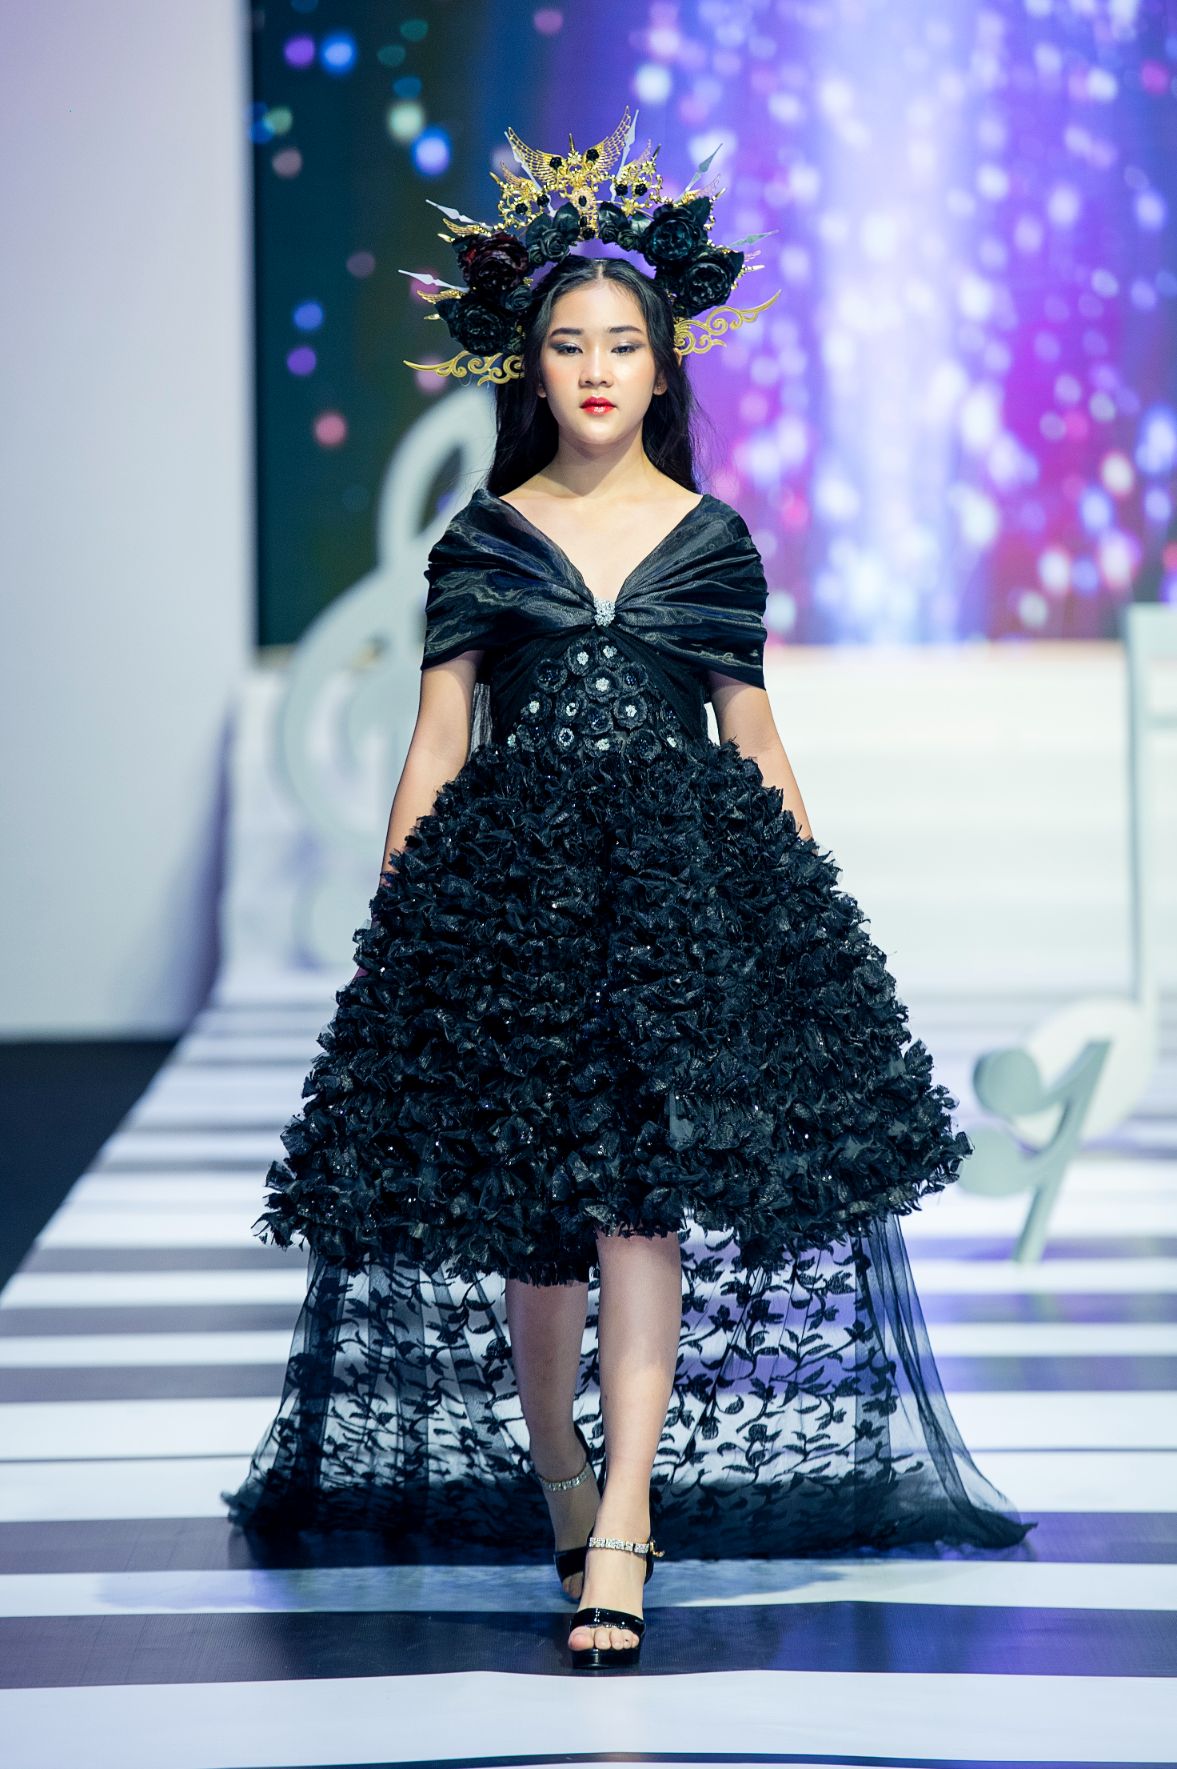 Cherry Phuong Diem NTK Pi Tran Gần 150 mẫu thiết kế được trình diễn tại Đêm hội mẫu nhí 2022   Fashion Melody